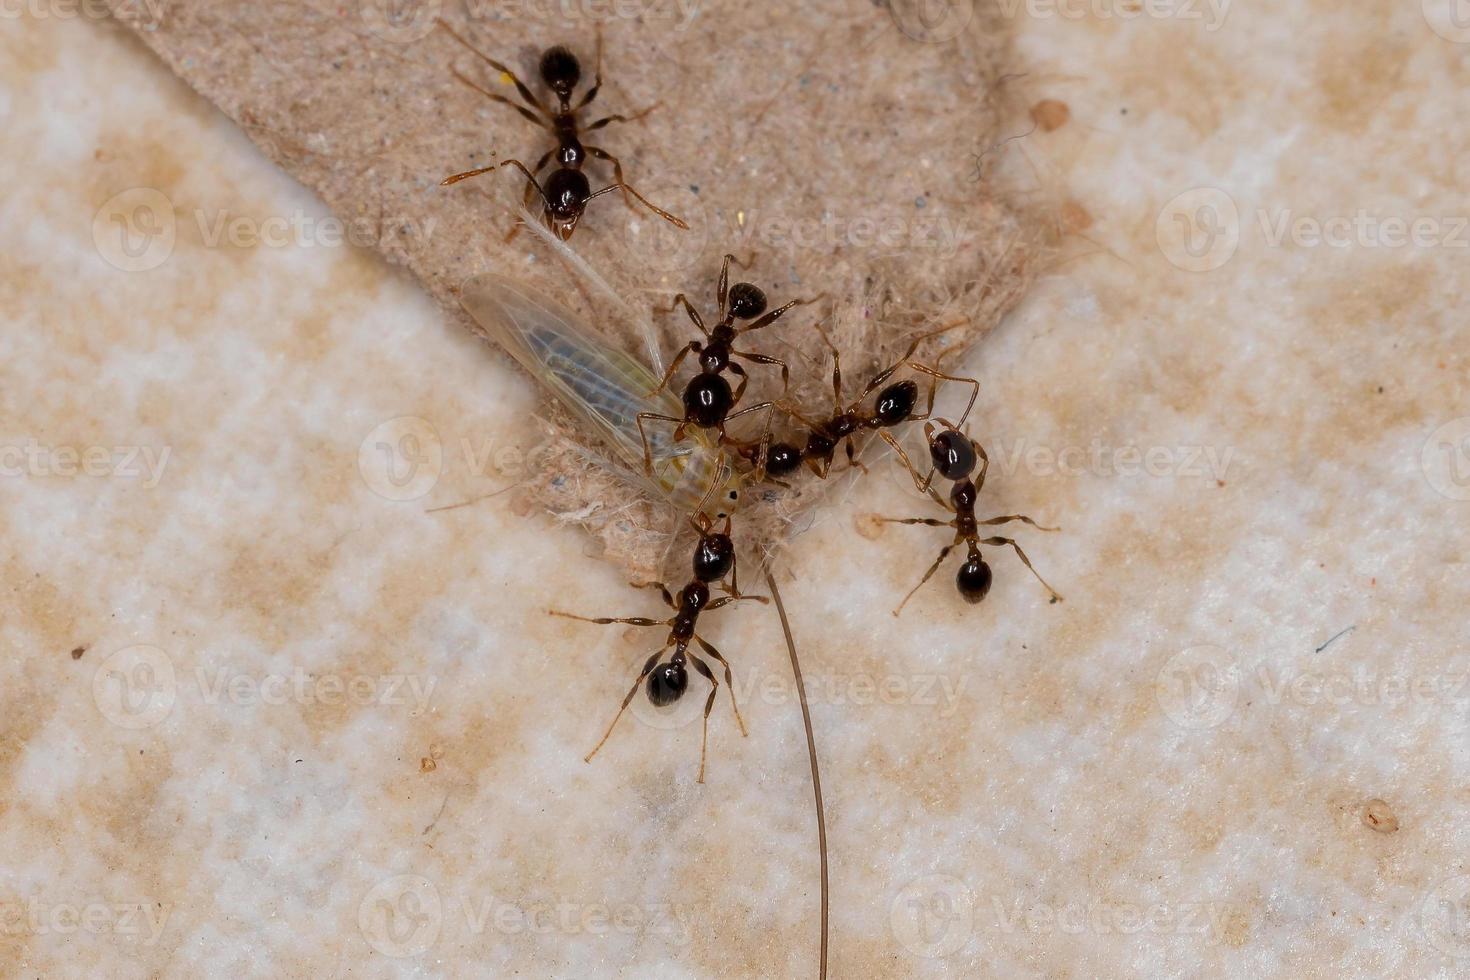 erwachsene großköpfige Ameisen, die eine kleine typische Zikade jagen foto